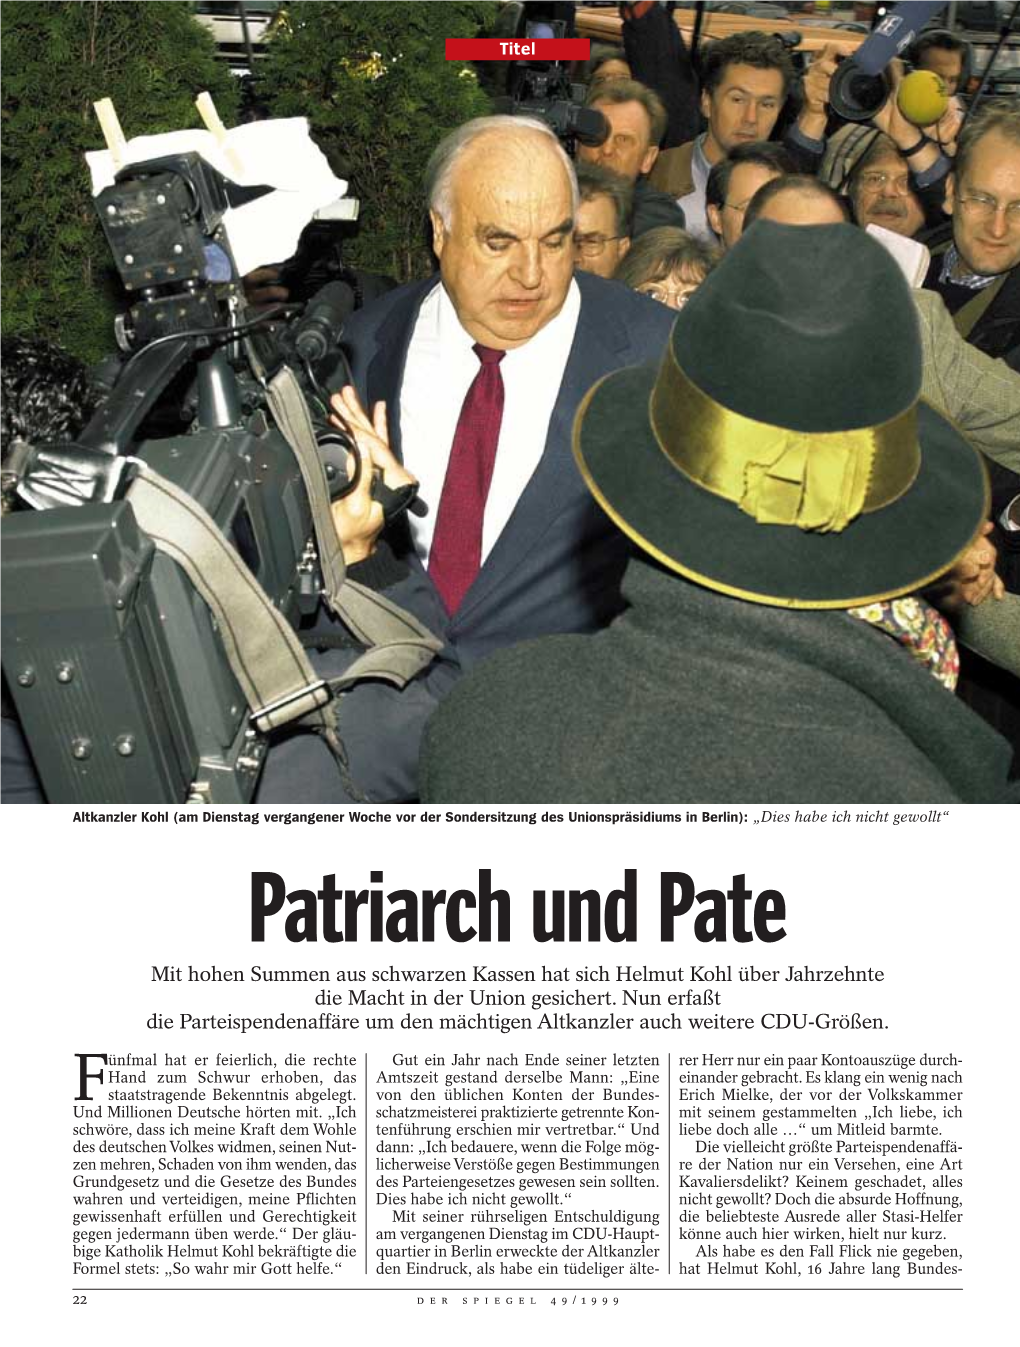 Patriarch Und Pate Mit Hohen Summen Aus Schwarzen Kassen Hat Sich Helmut Kohl Über Jahrzehnte Die Macht in Der Union Gesichert